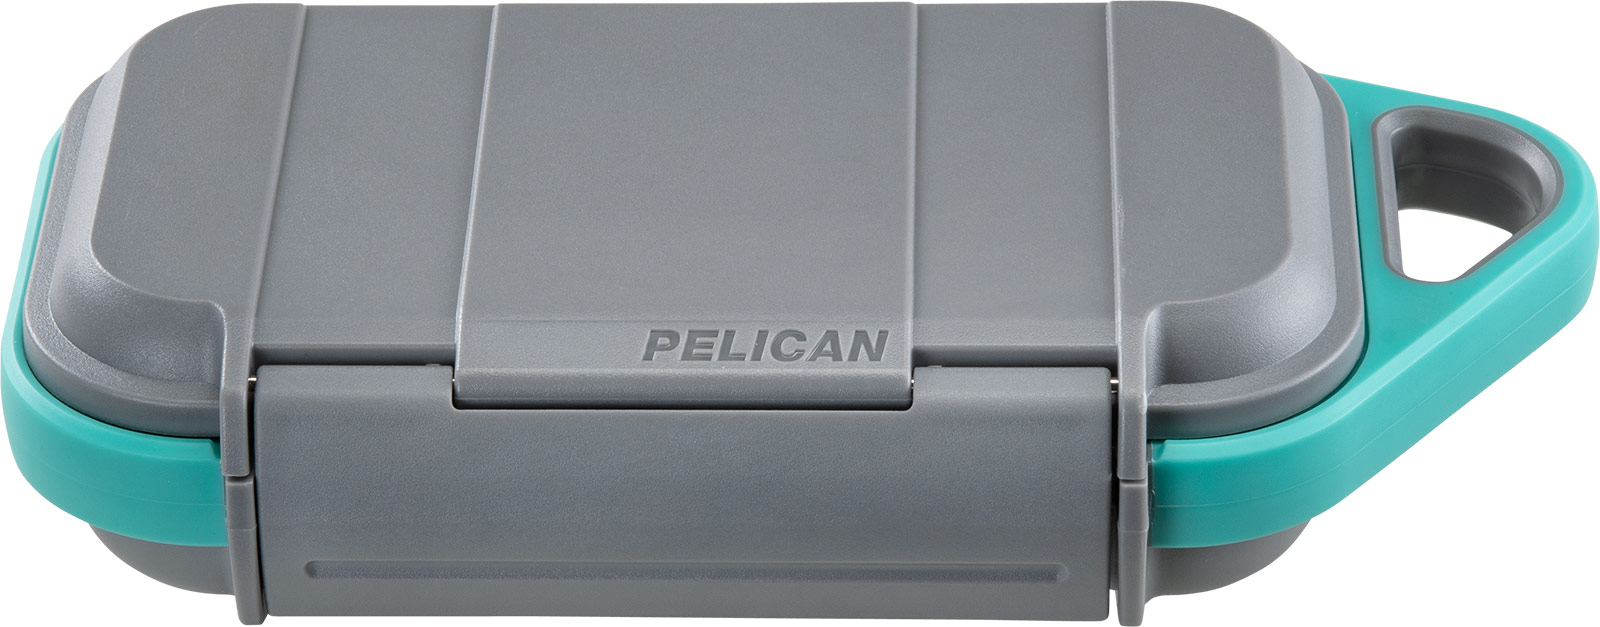 pelican micro personal go case g40